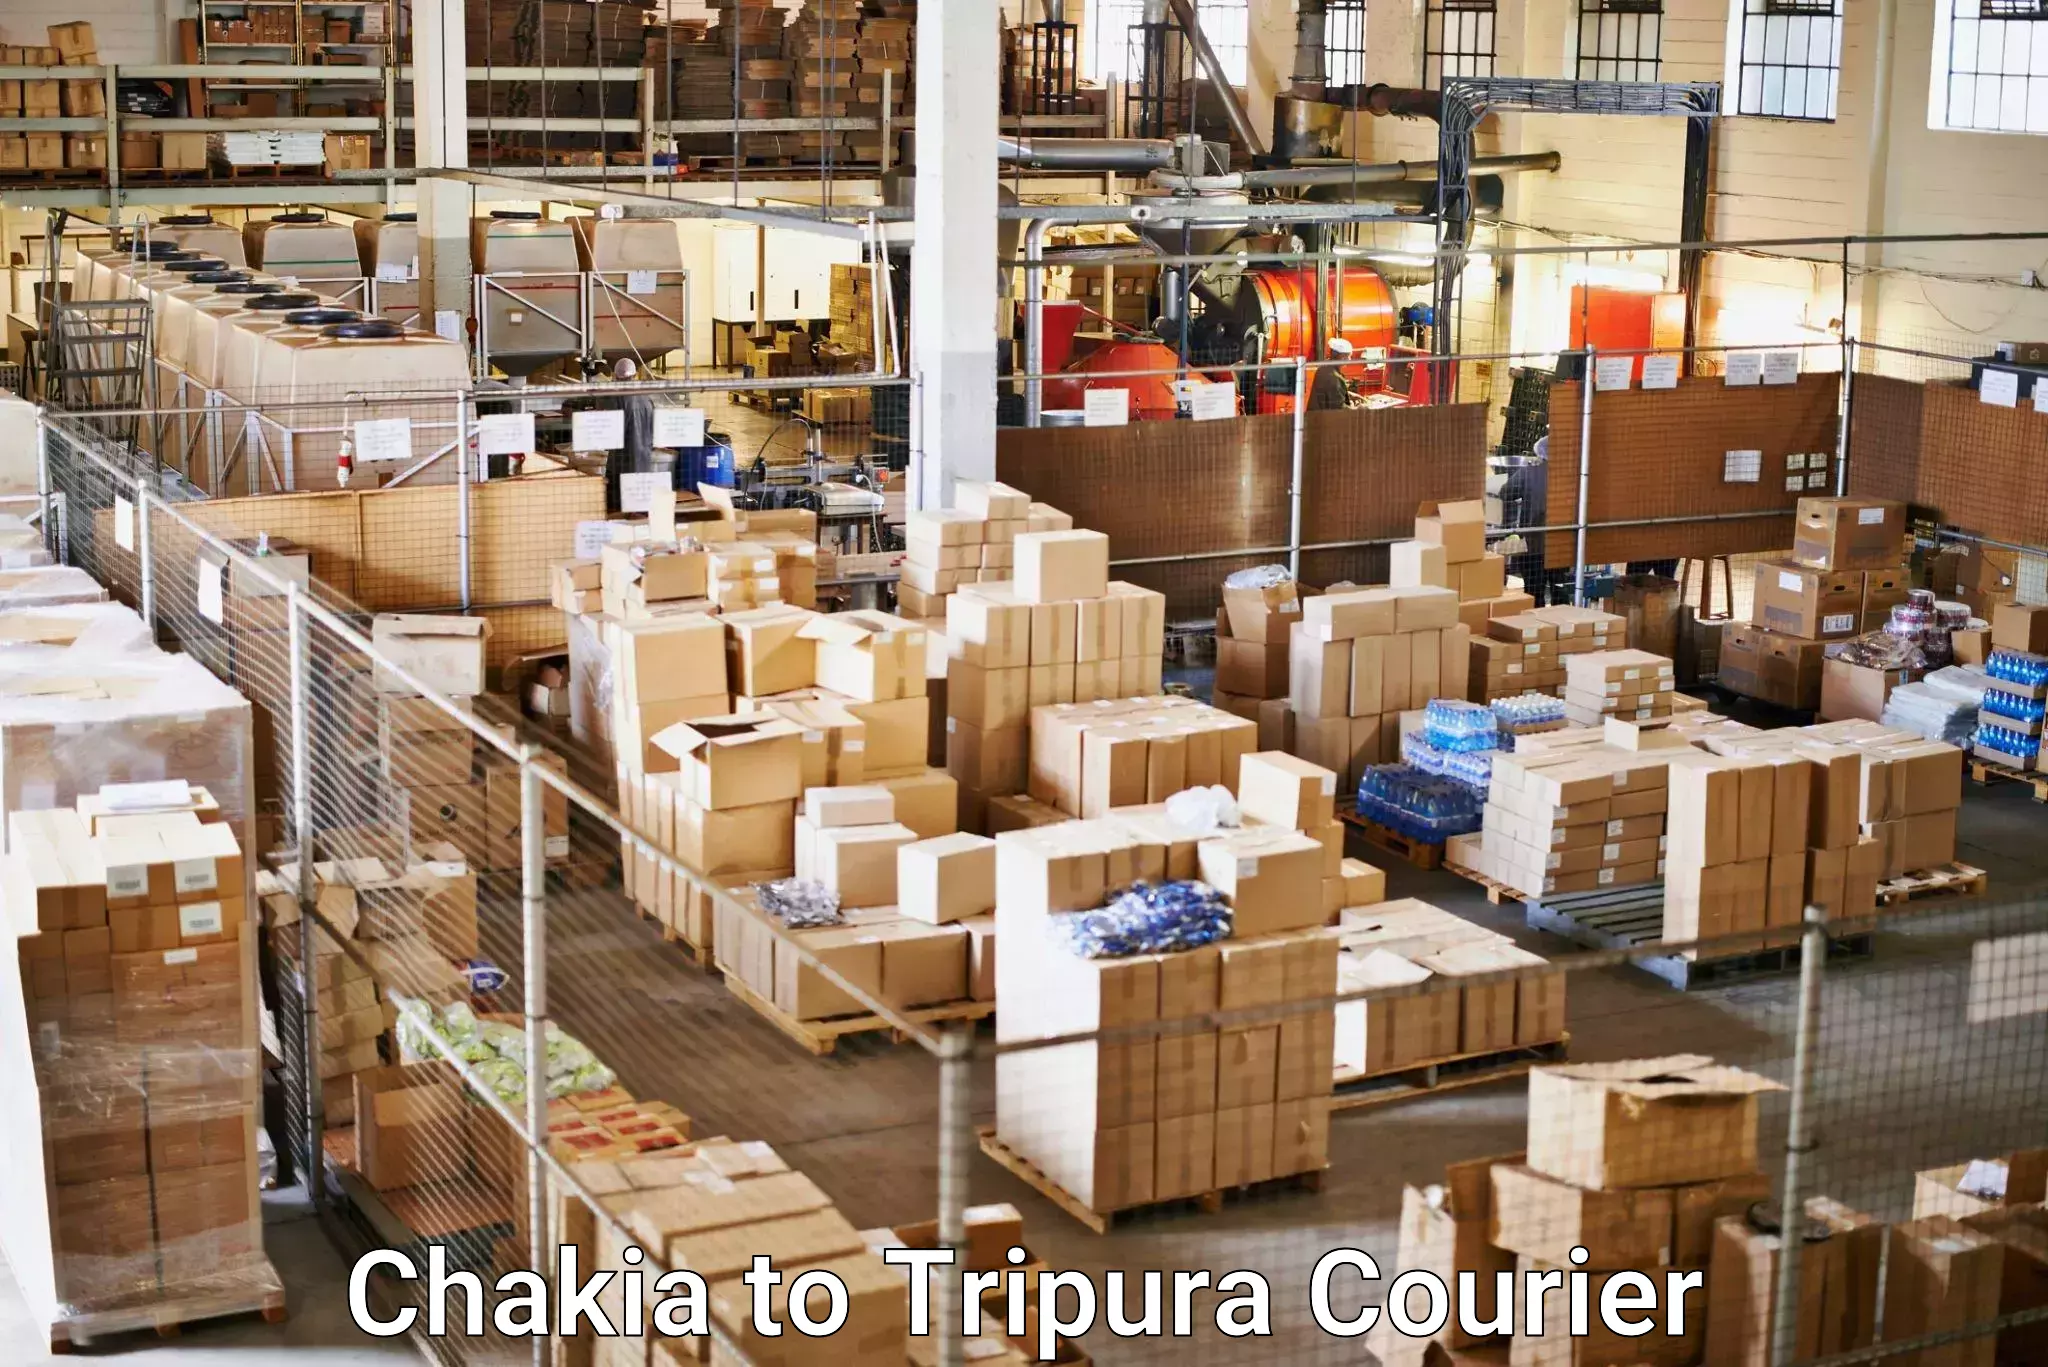 Flexible parcel services Chakia to Tripura